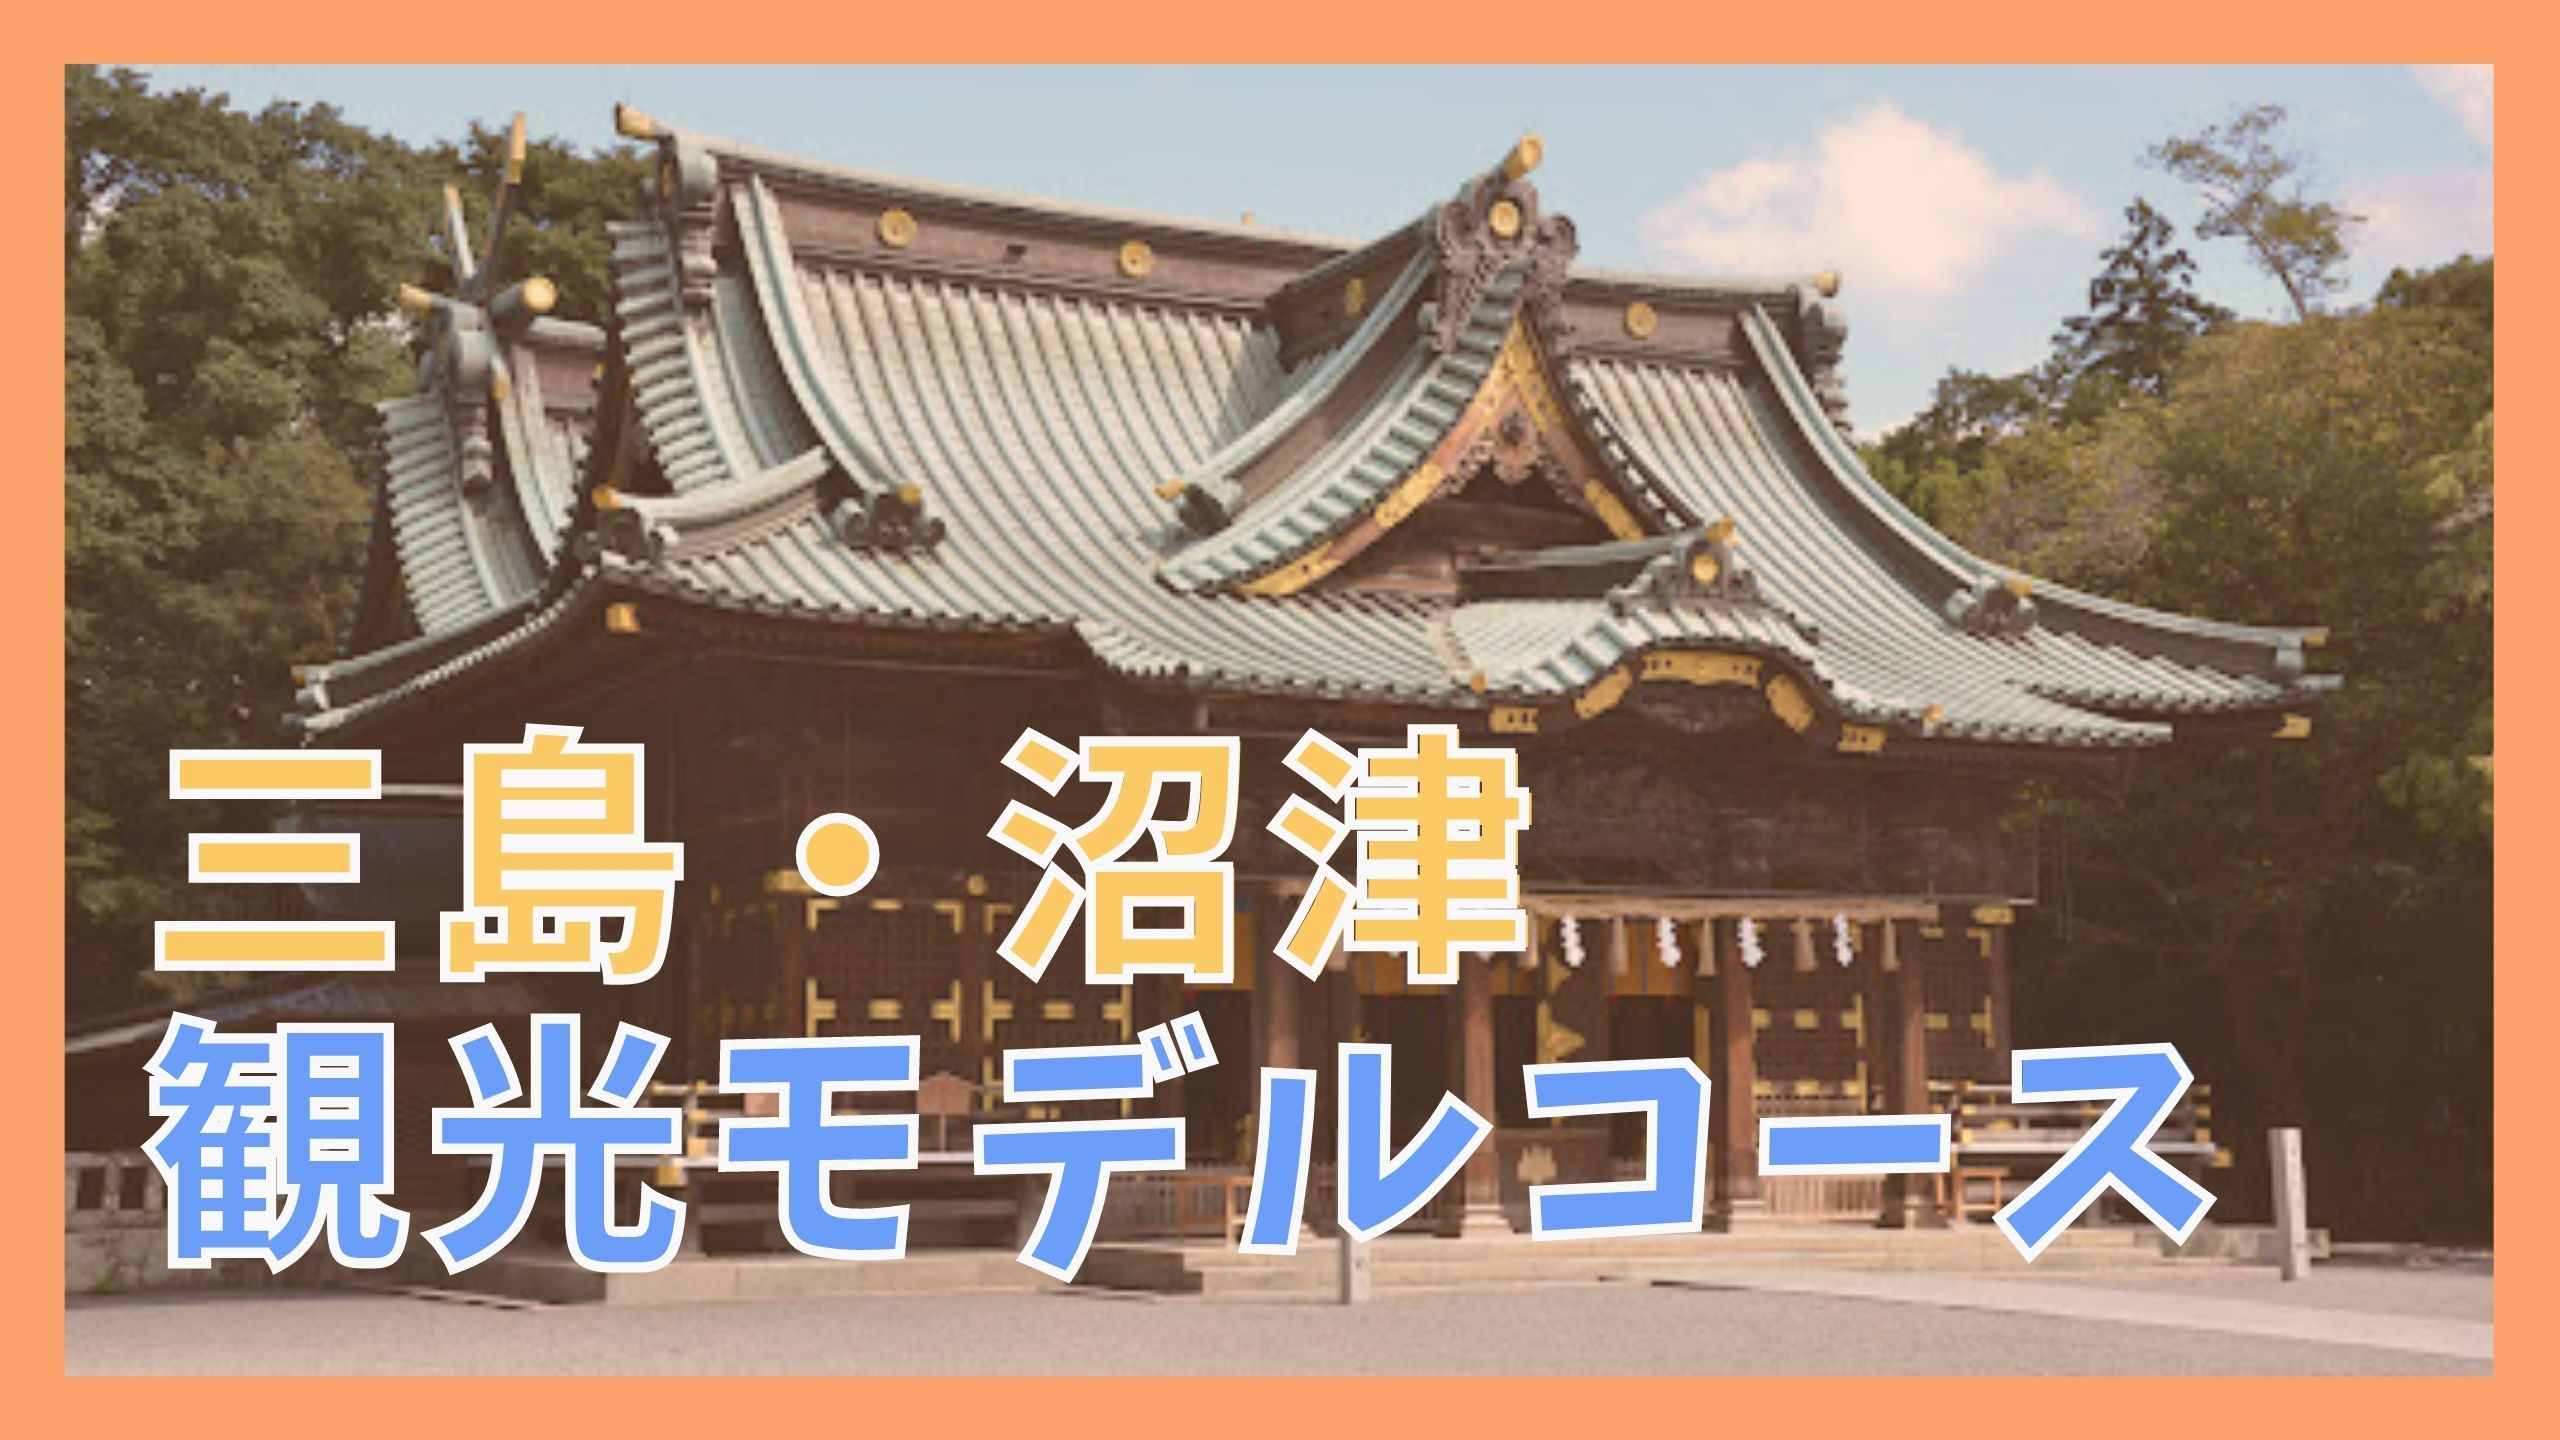 三島 沼津観光モデルコース 日帰りで巡る10の観光名所 ジャパンワンダラー